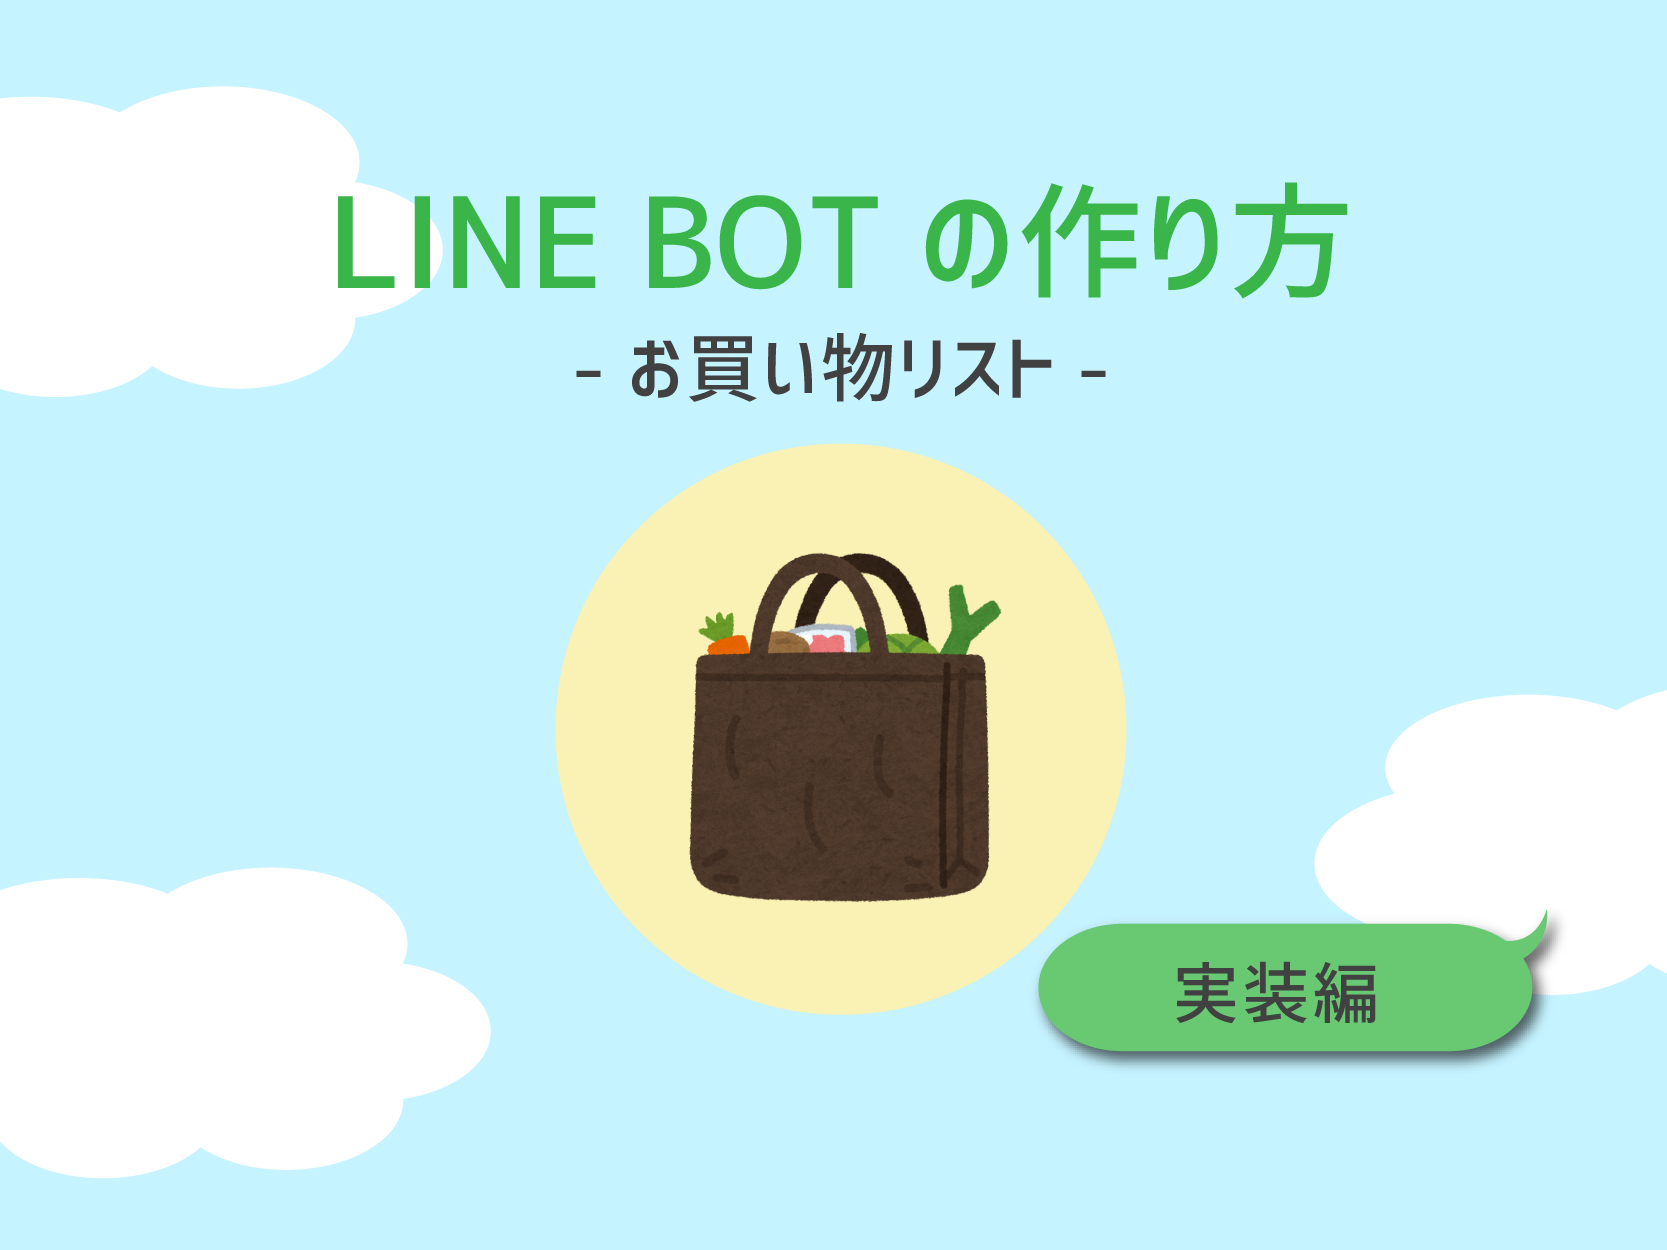 【実装編】LINE BOTのつくり方 -お買い物リスト-